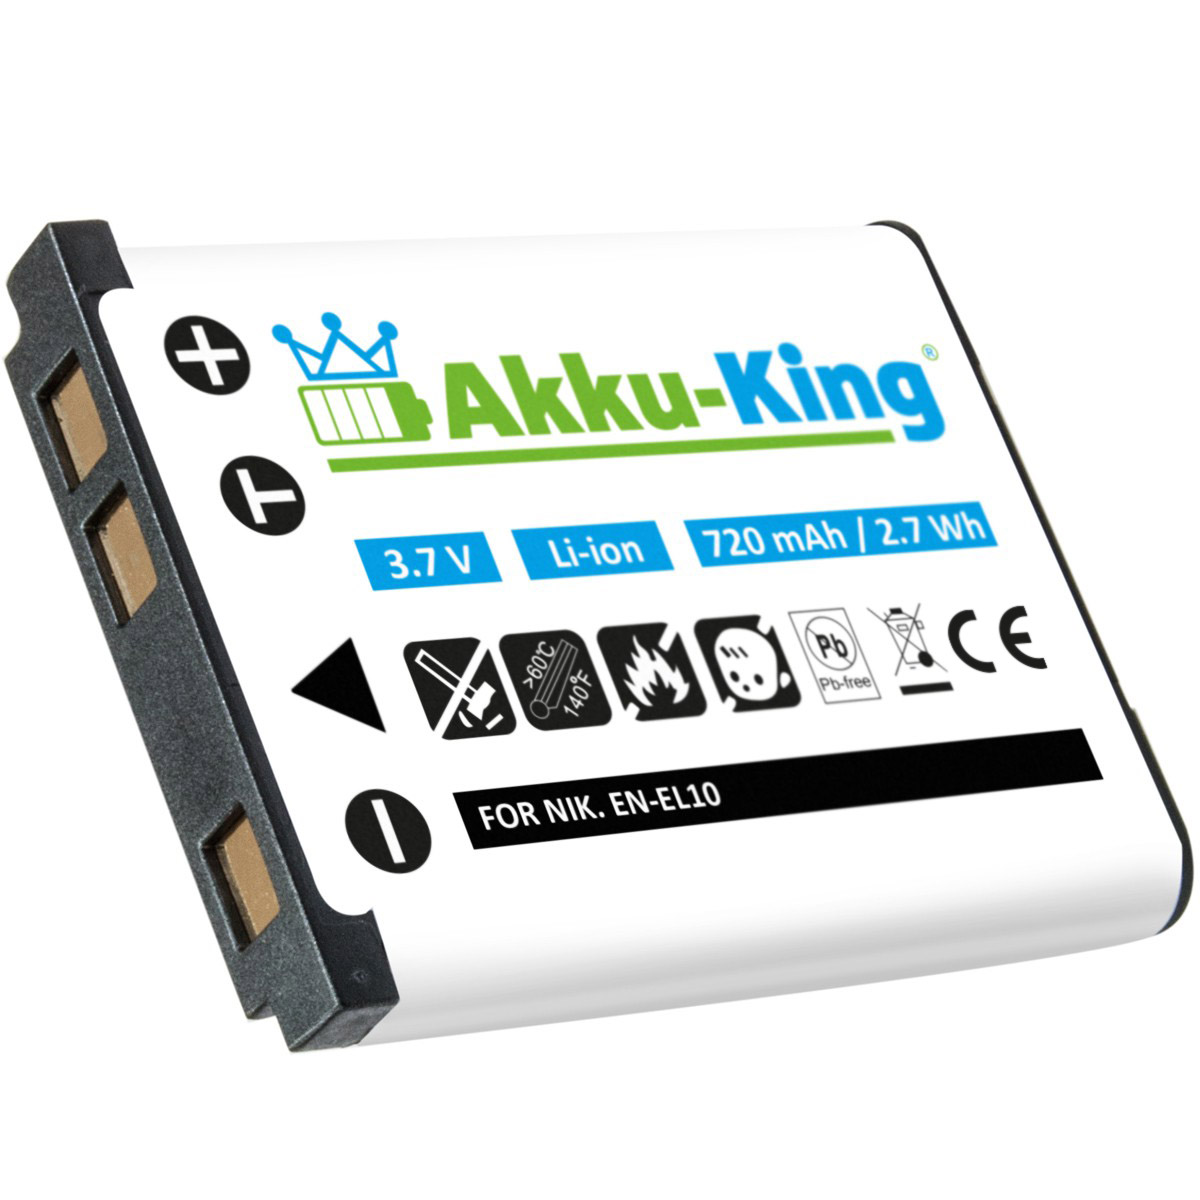 Volt, 3.7 Kamera-Akku, D-Li63 700mAh AKKU-KING kompatibel Pentax Li-Ion Akku mit